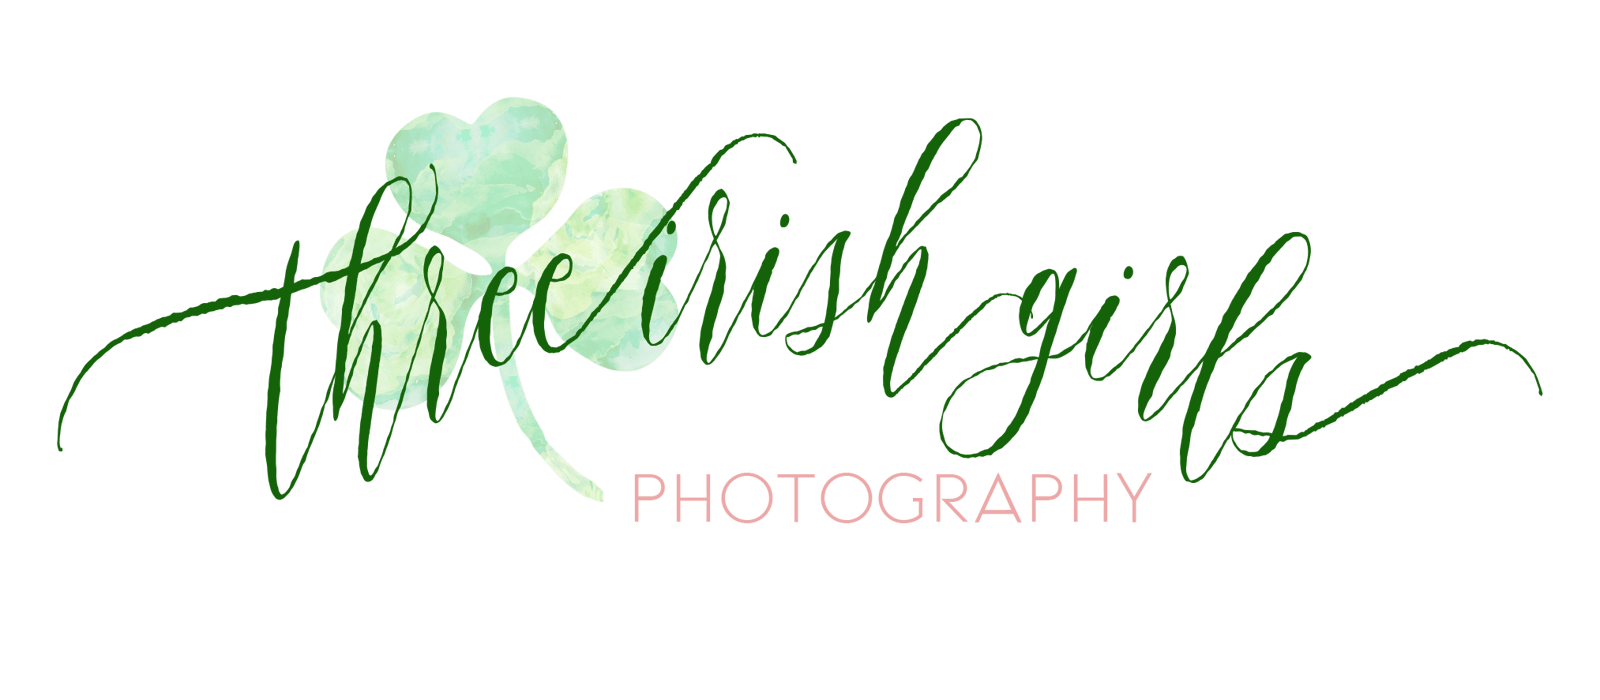 Three Irish Girls Photography